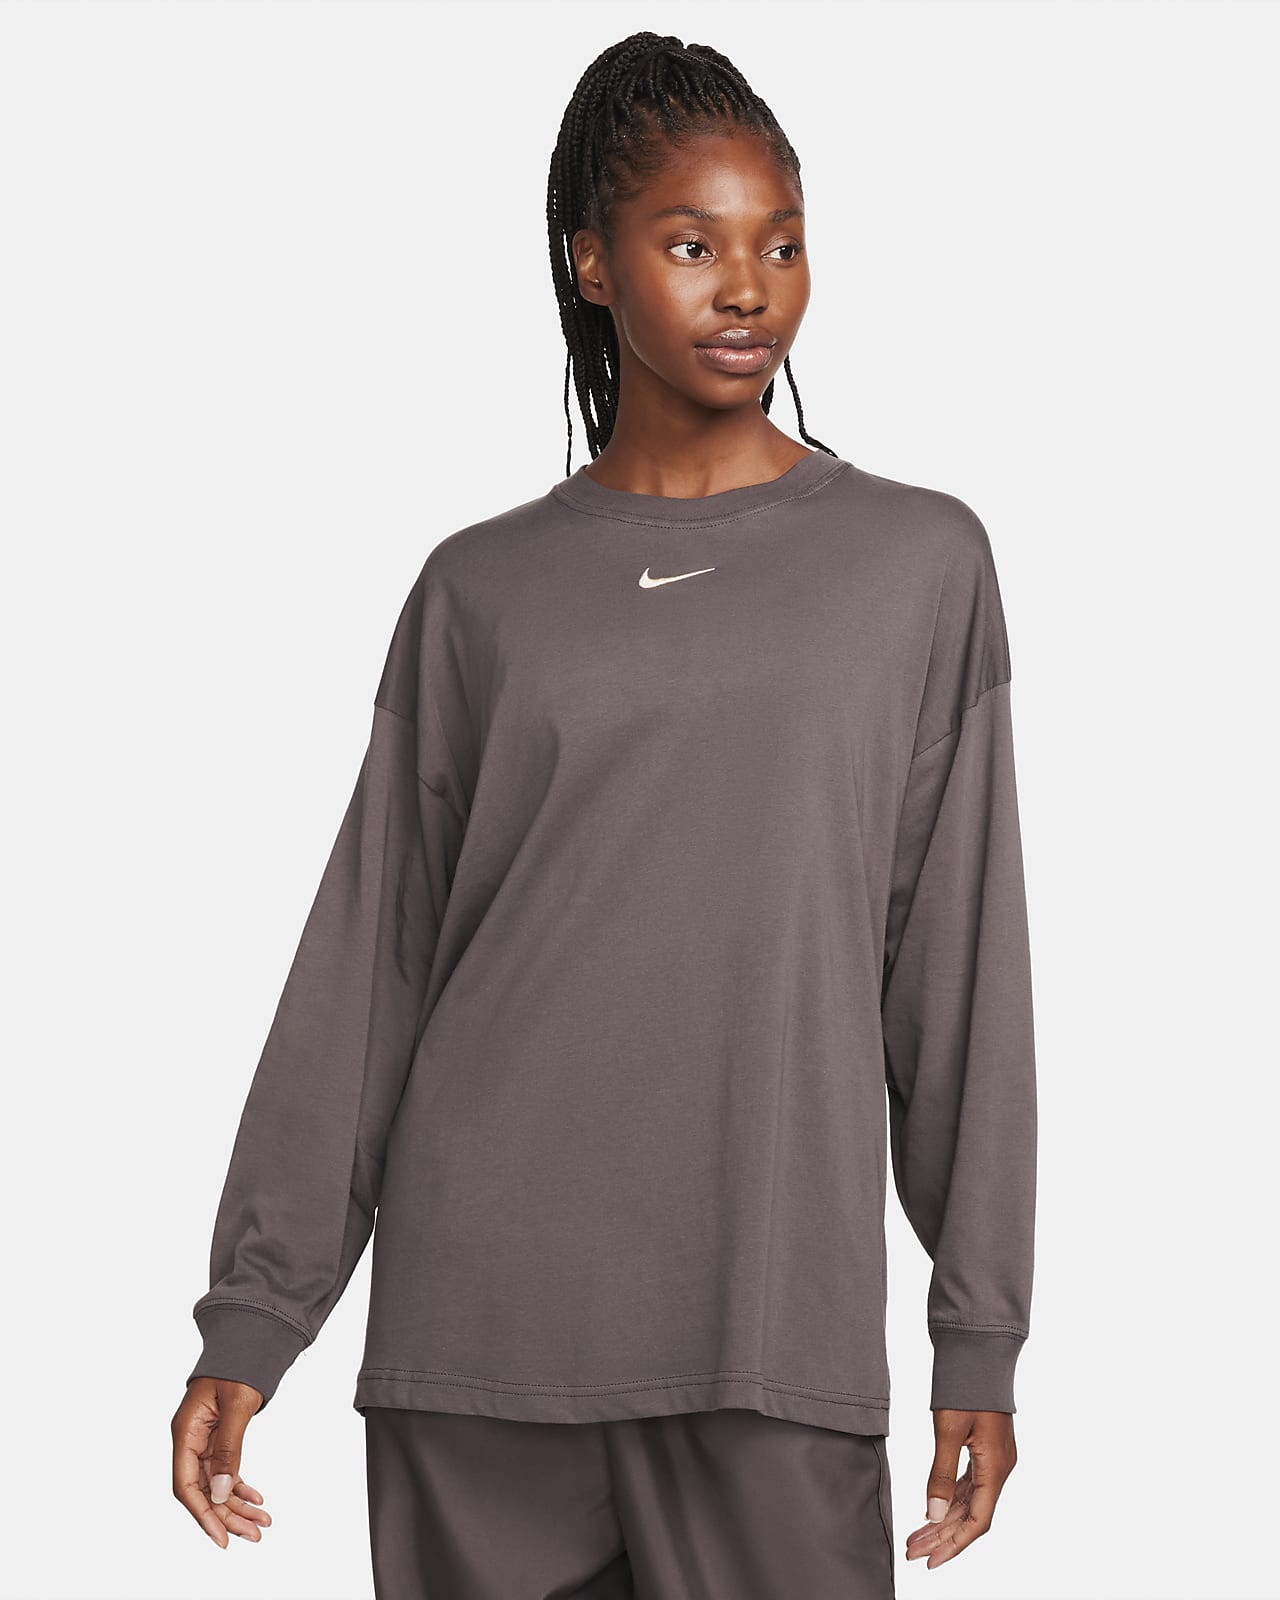 Nike Sportswear hosszú ujjú női póló